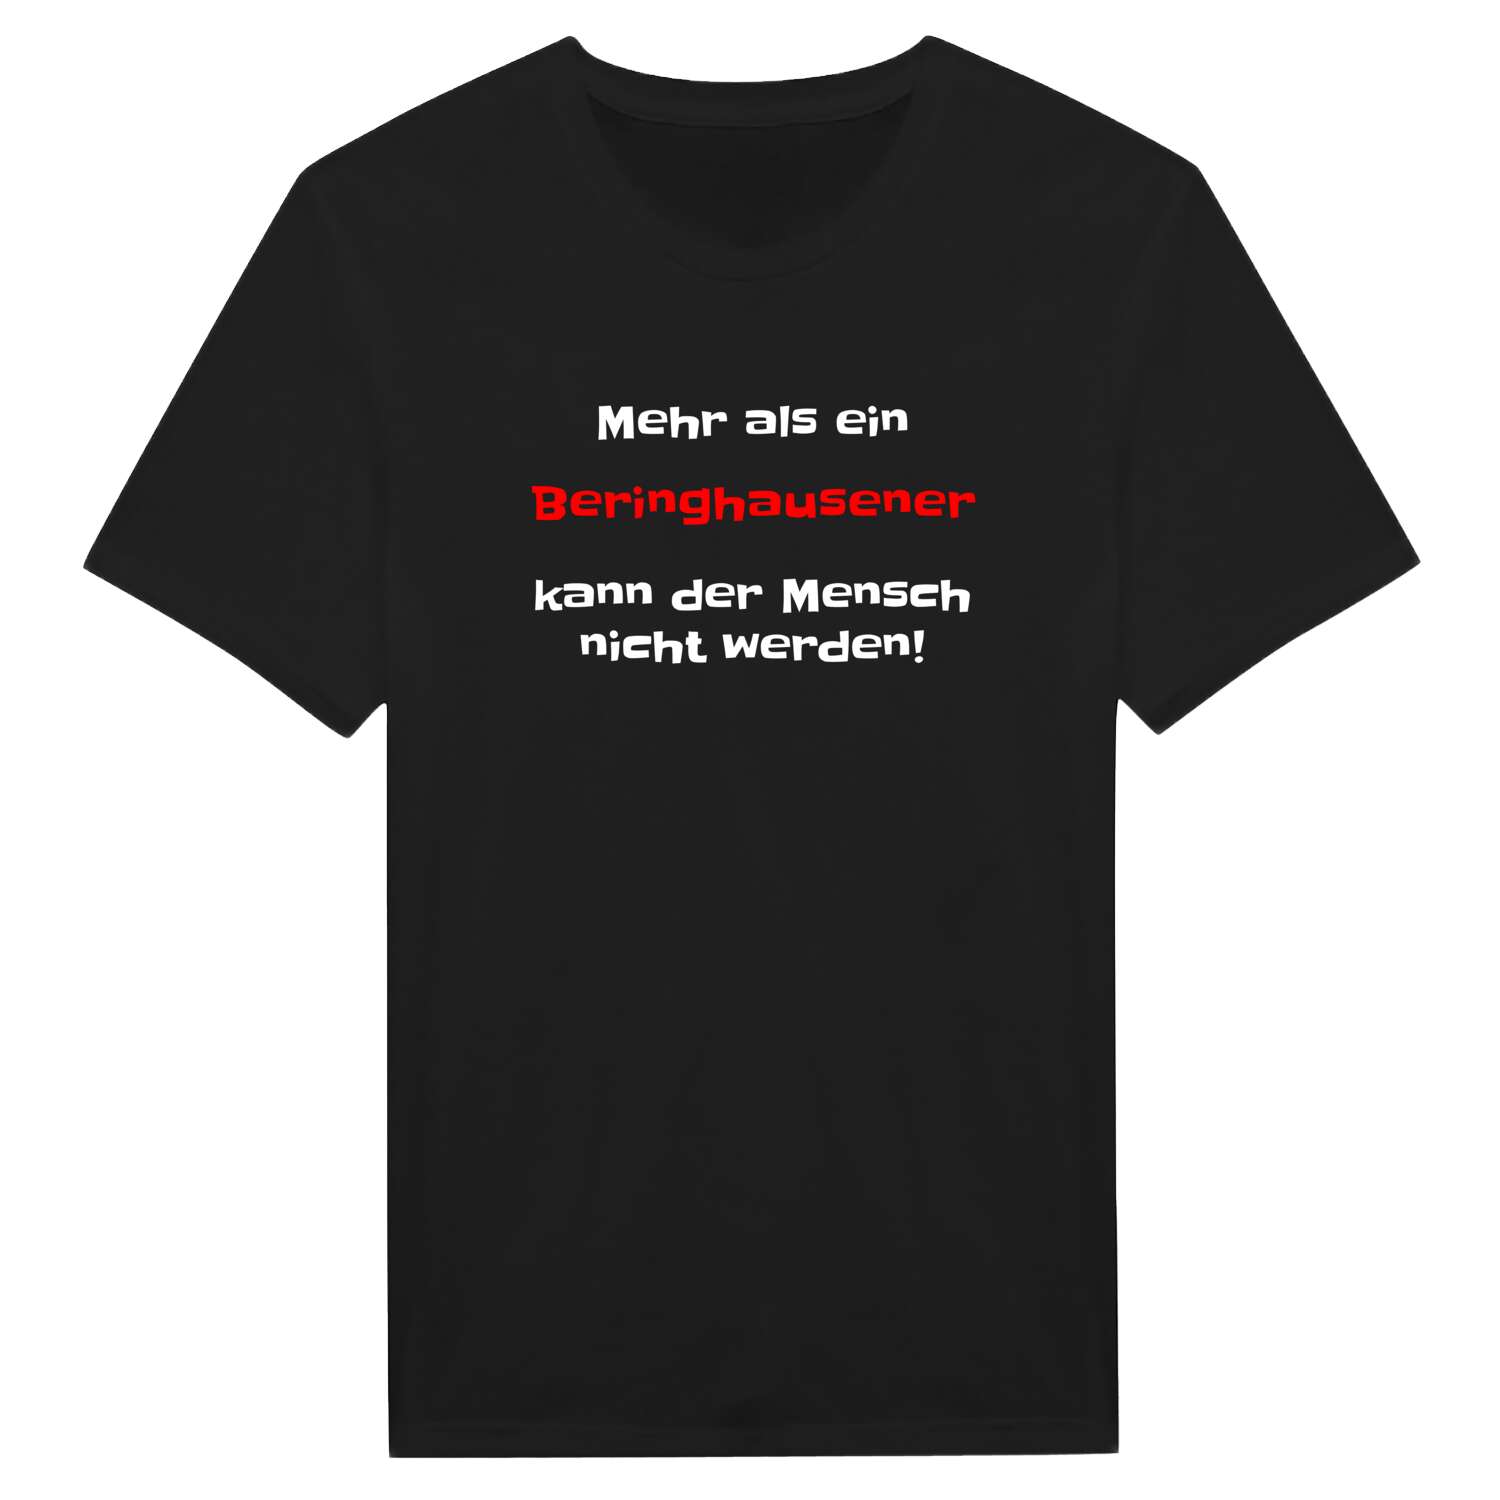 Beringhausen T-Shirt »Mehr als ein«